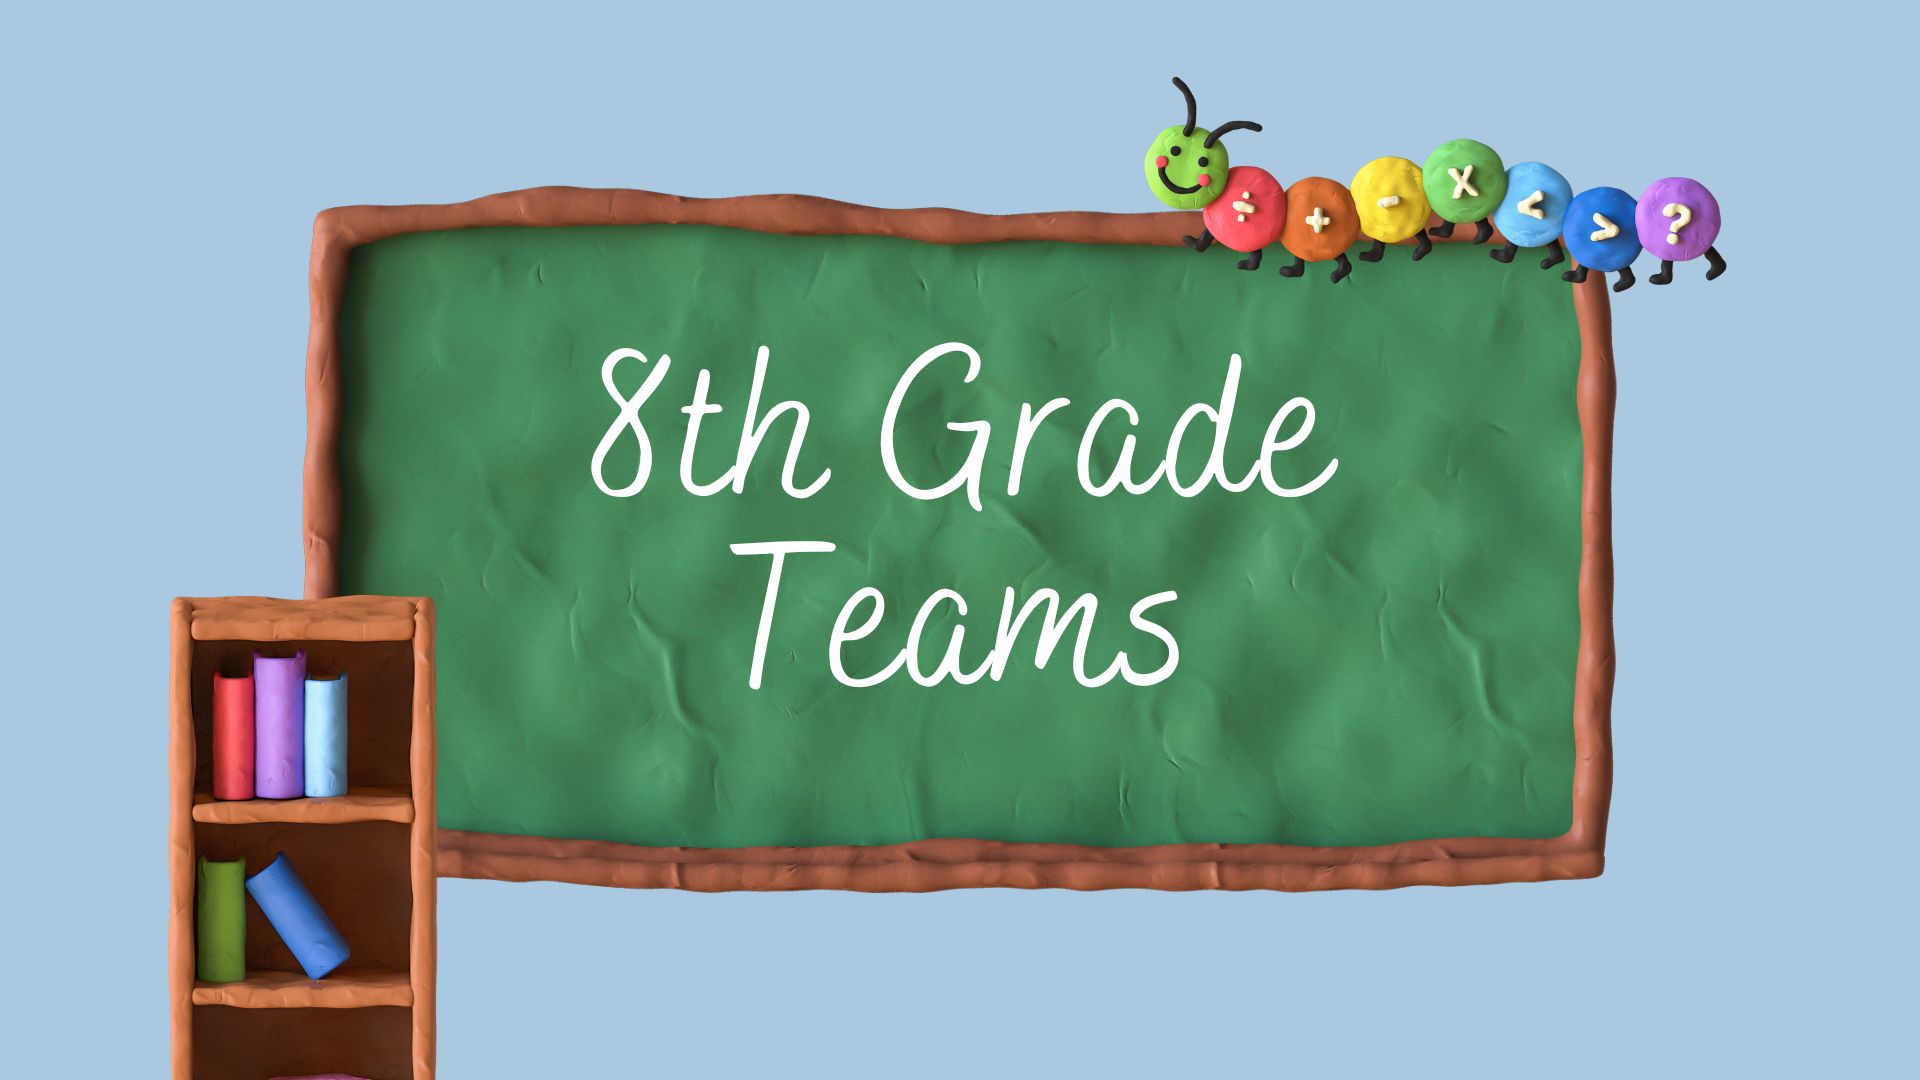 8th Grade Teams